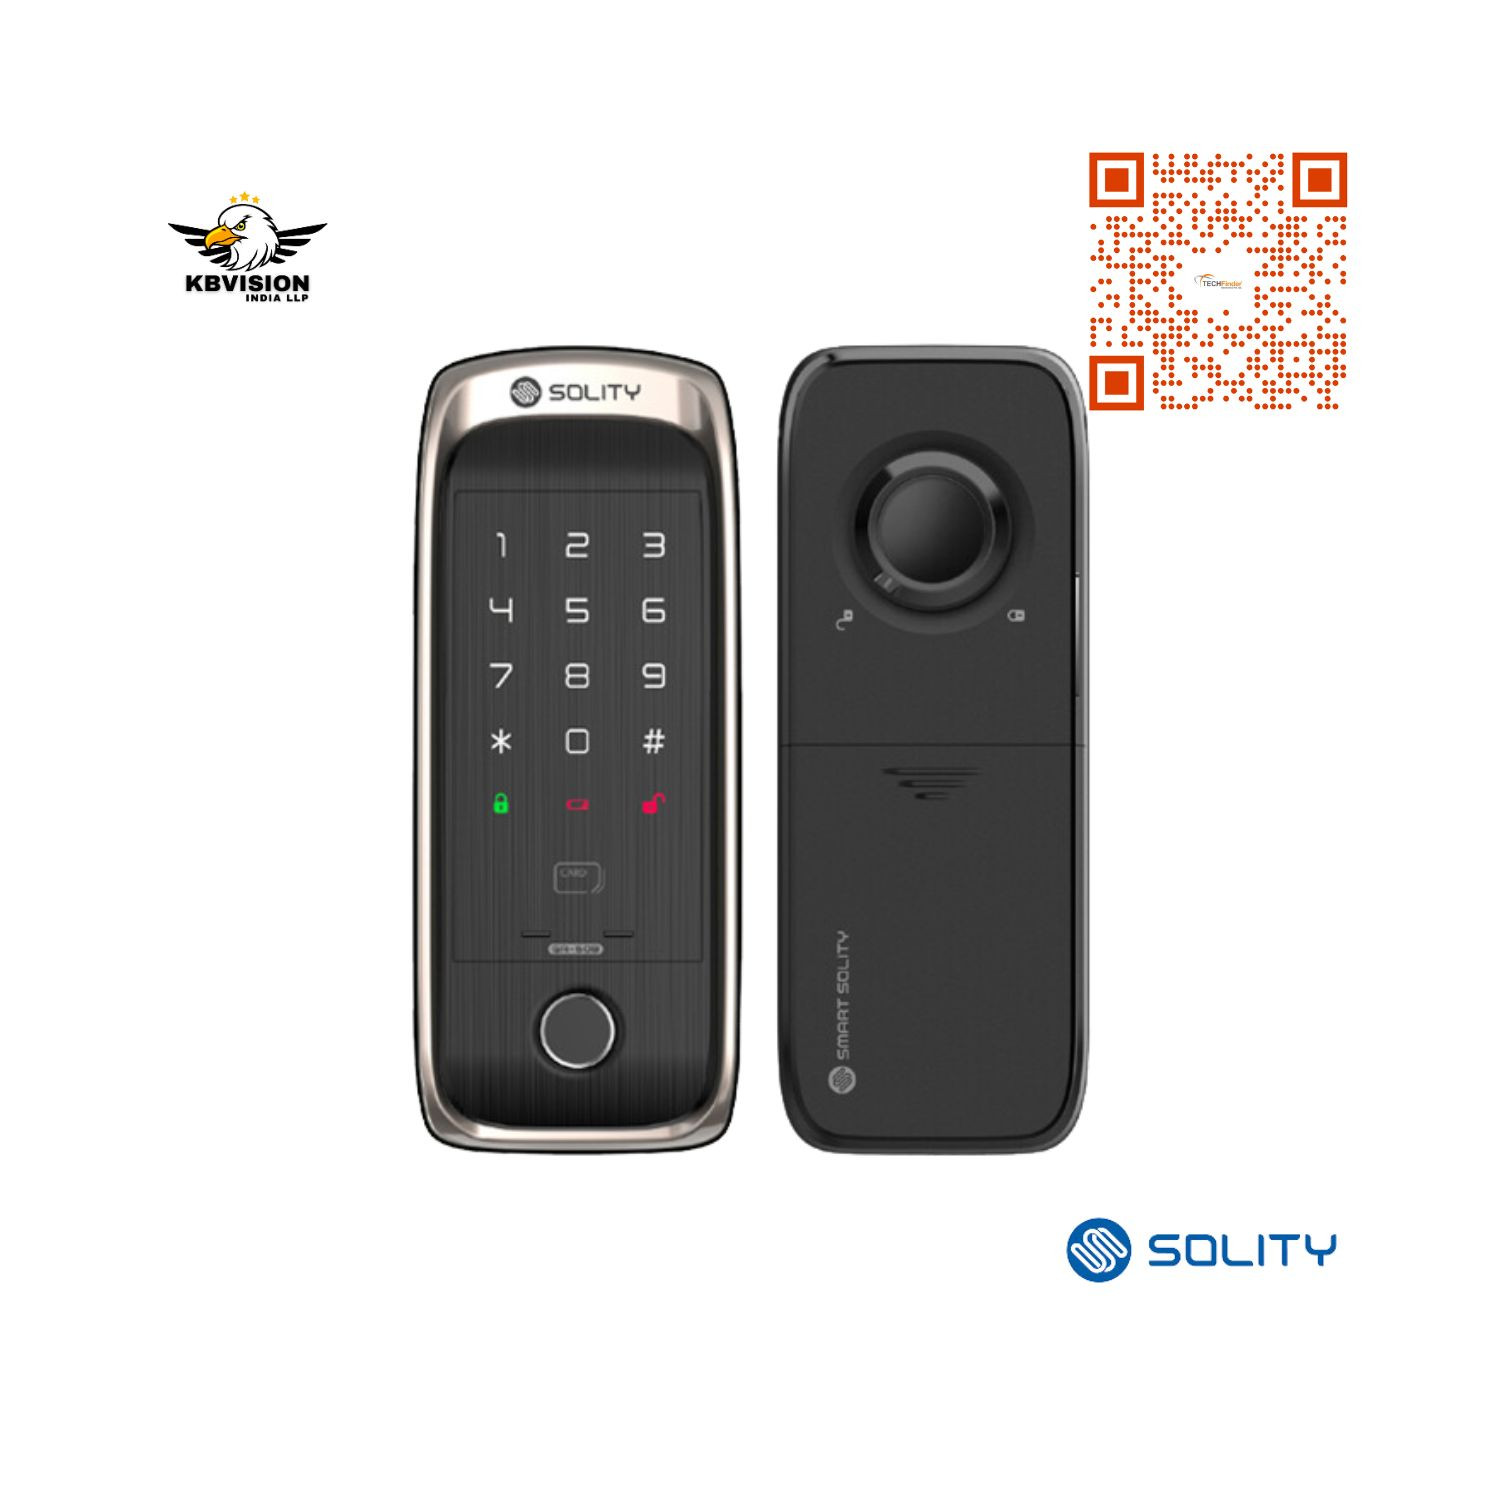 Solity GA-60B Premium Fingerprint Lock for Sliding or Sash Door